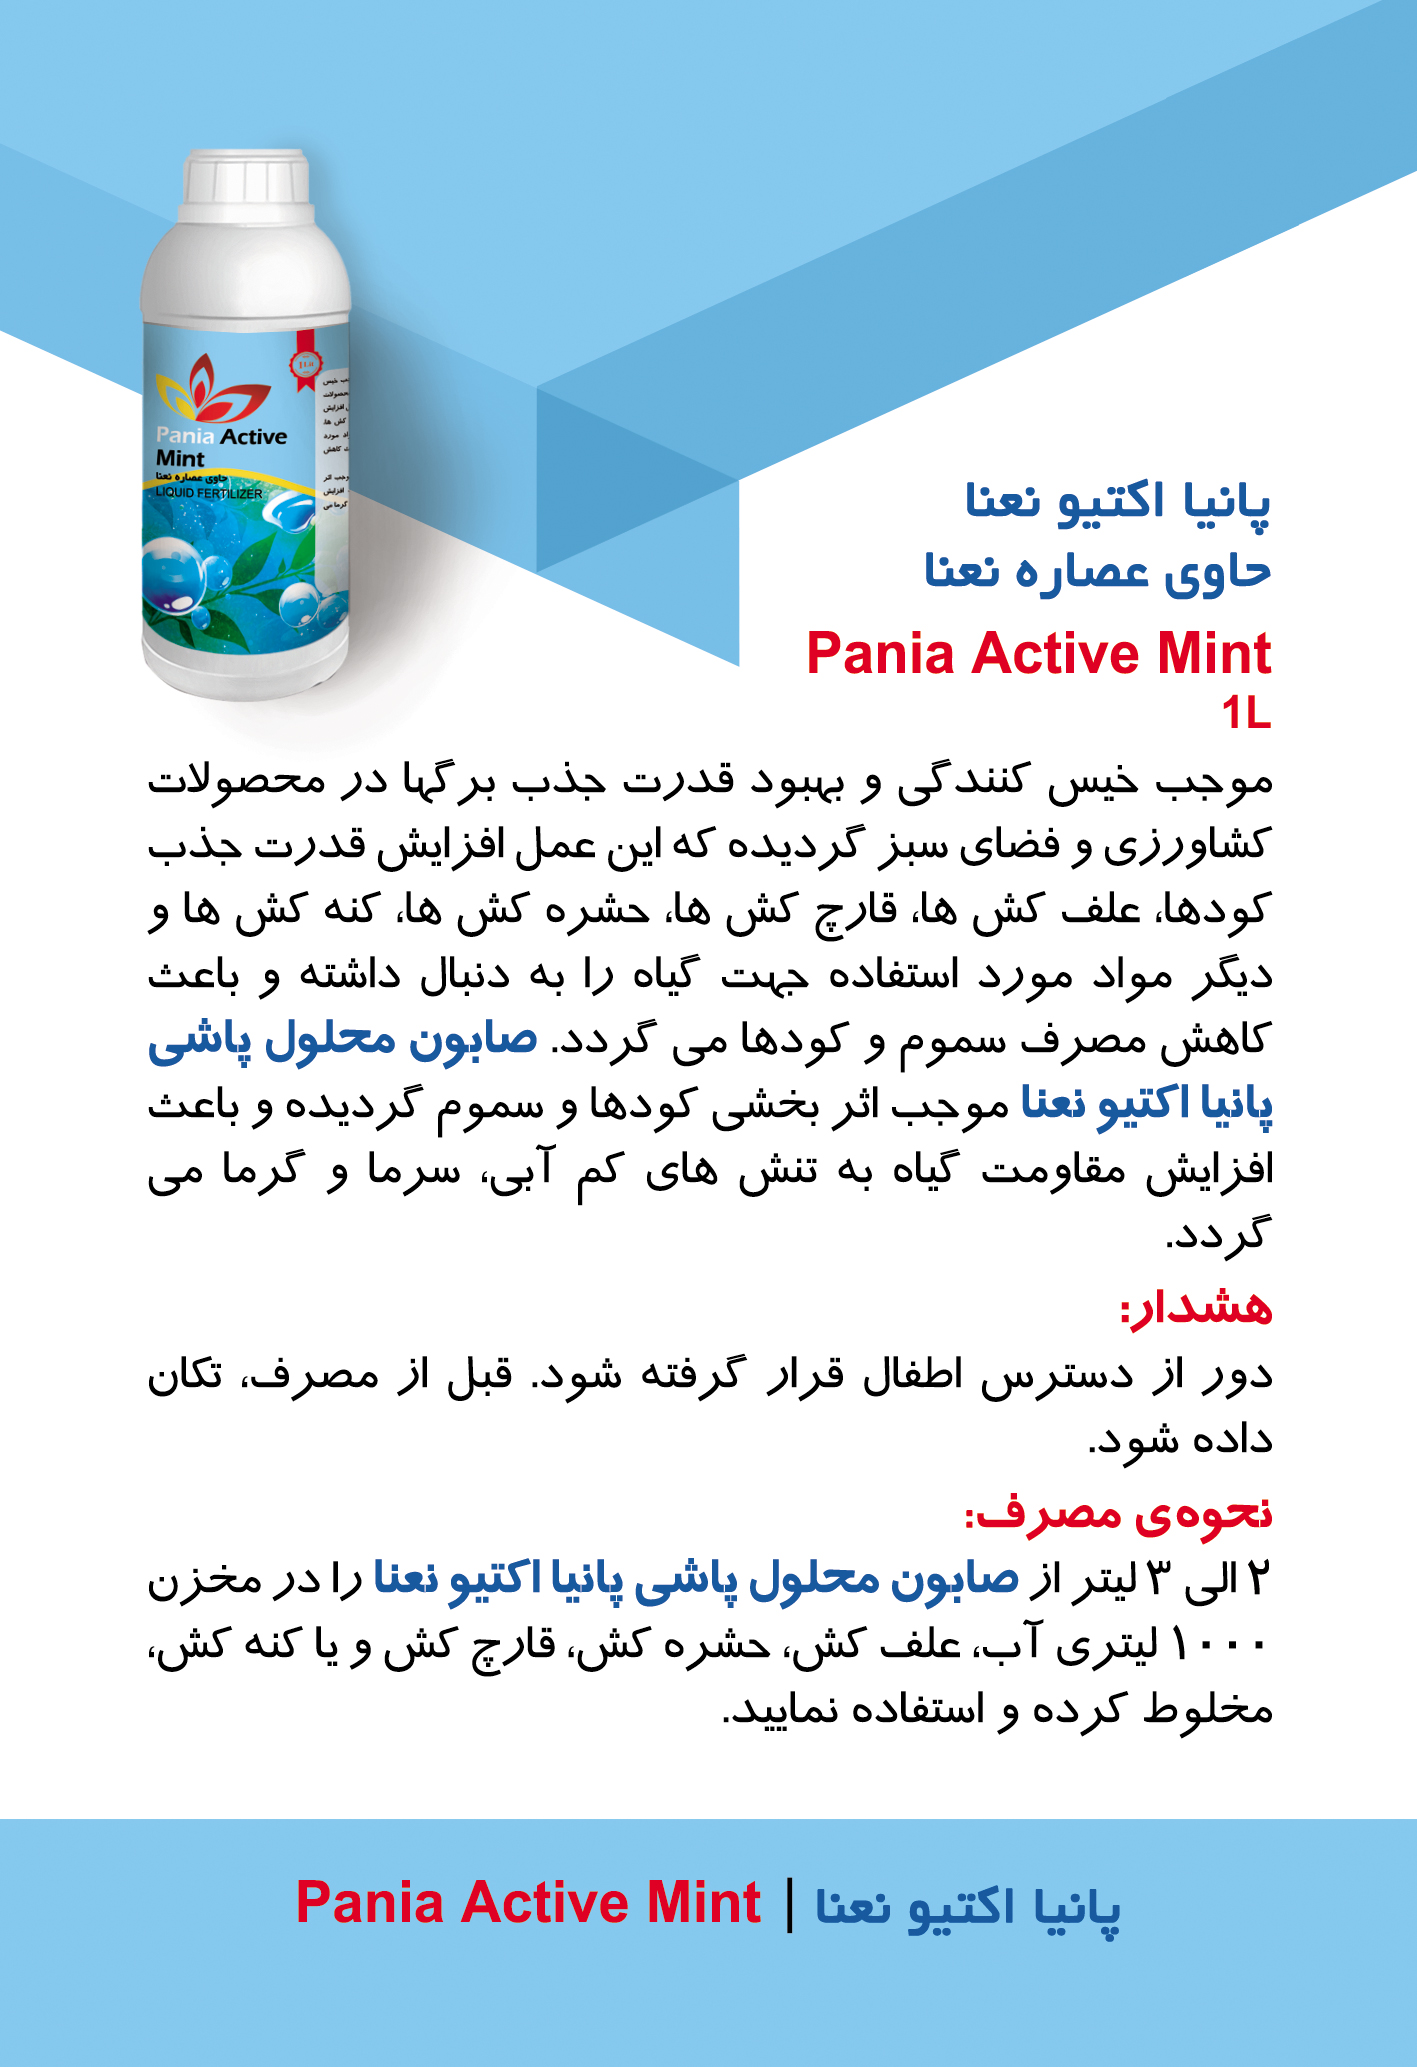 شوینده های گروه پانیا | Pania Group Detergents